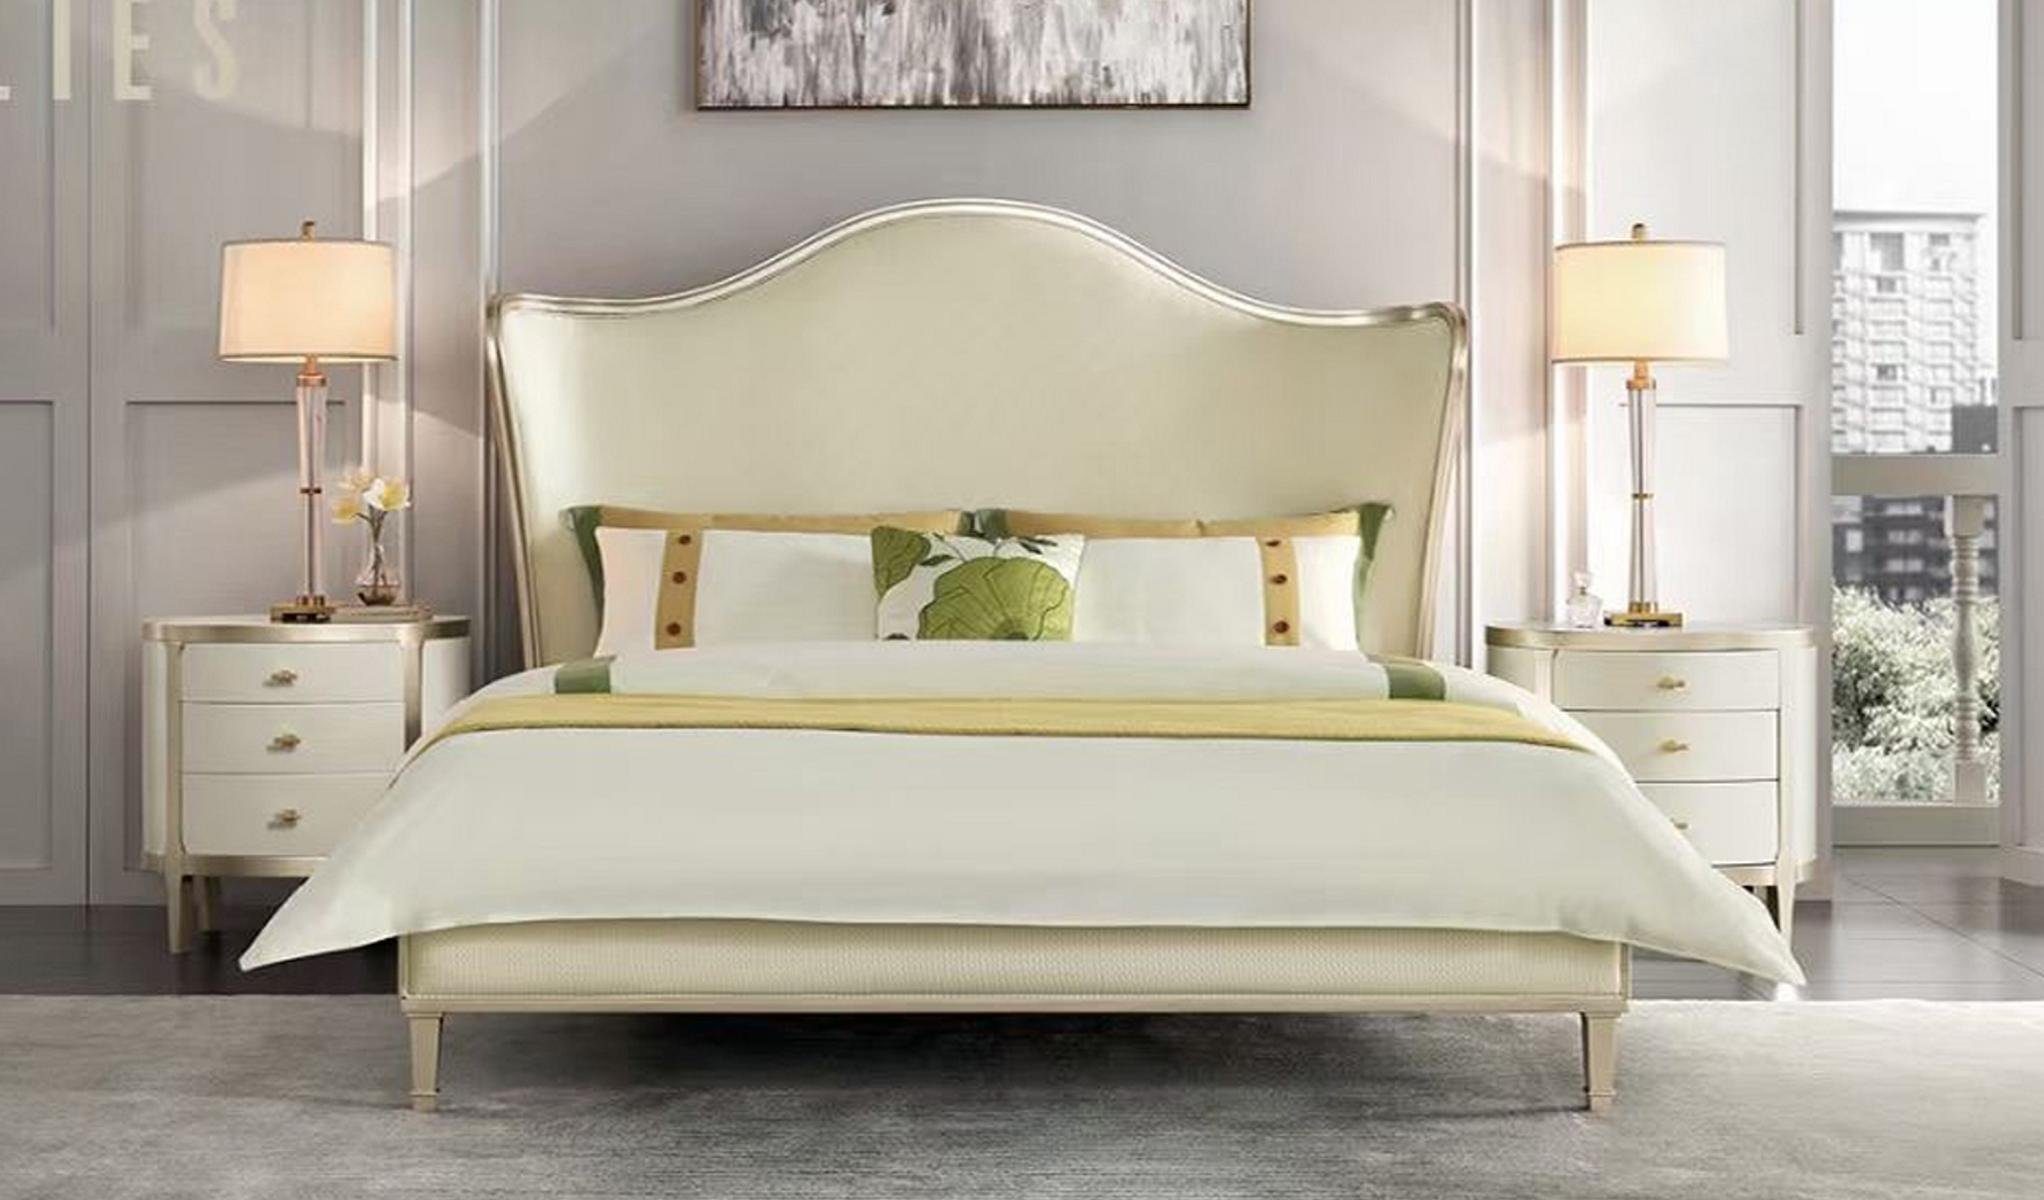 JVmoebel Bett, Doppelbetten Bett Weiß Bett Modern Bettgestell Betten Design